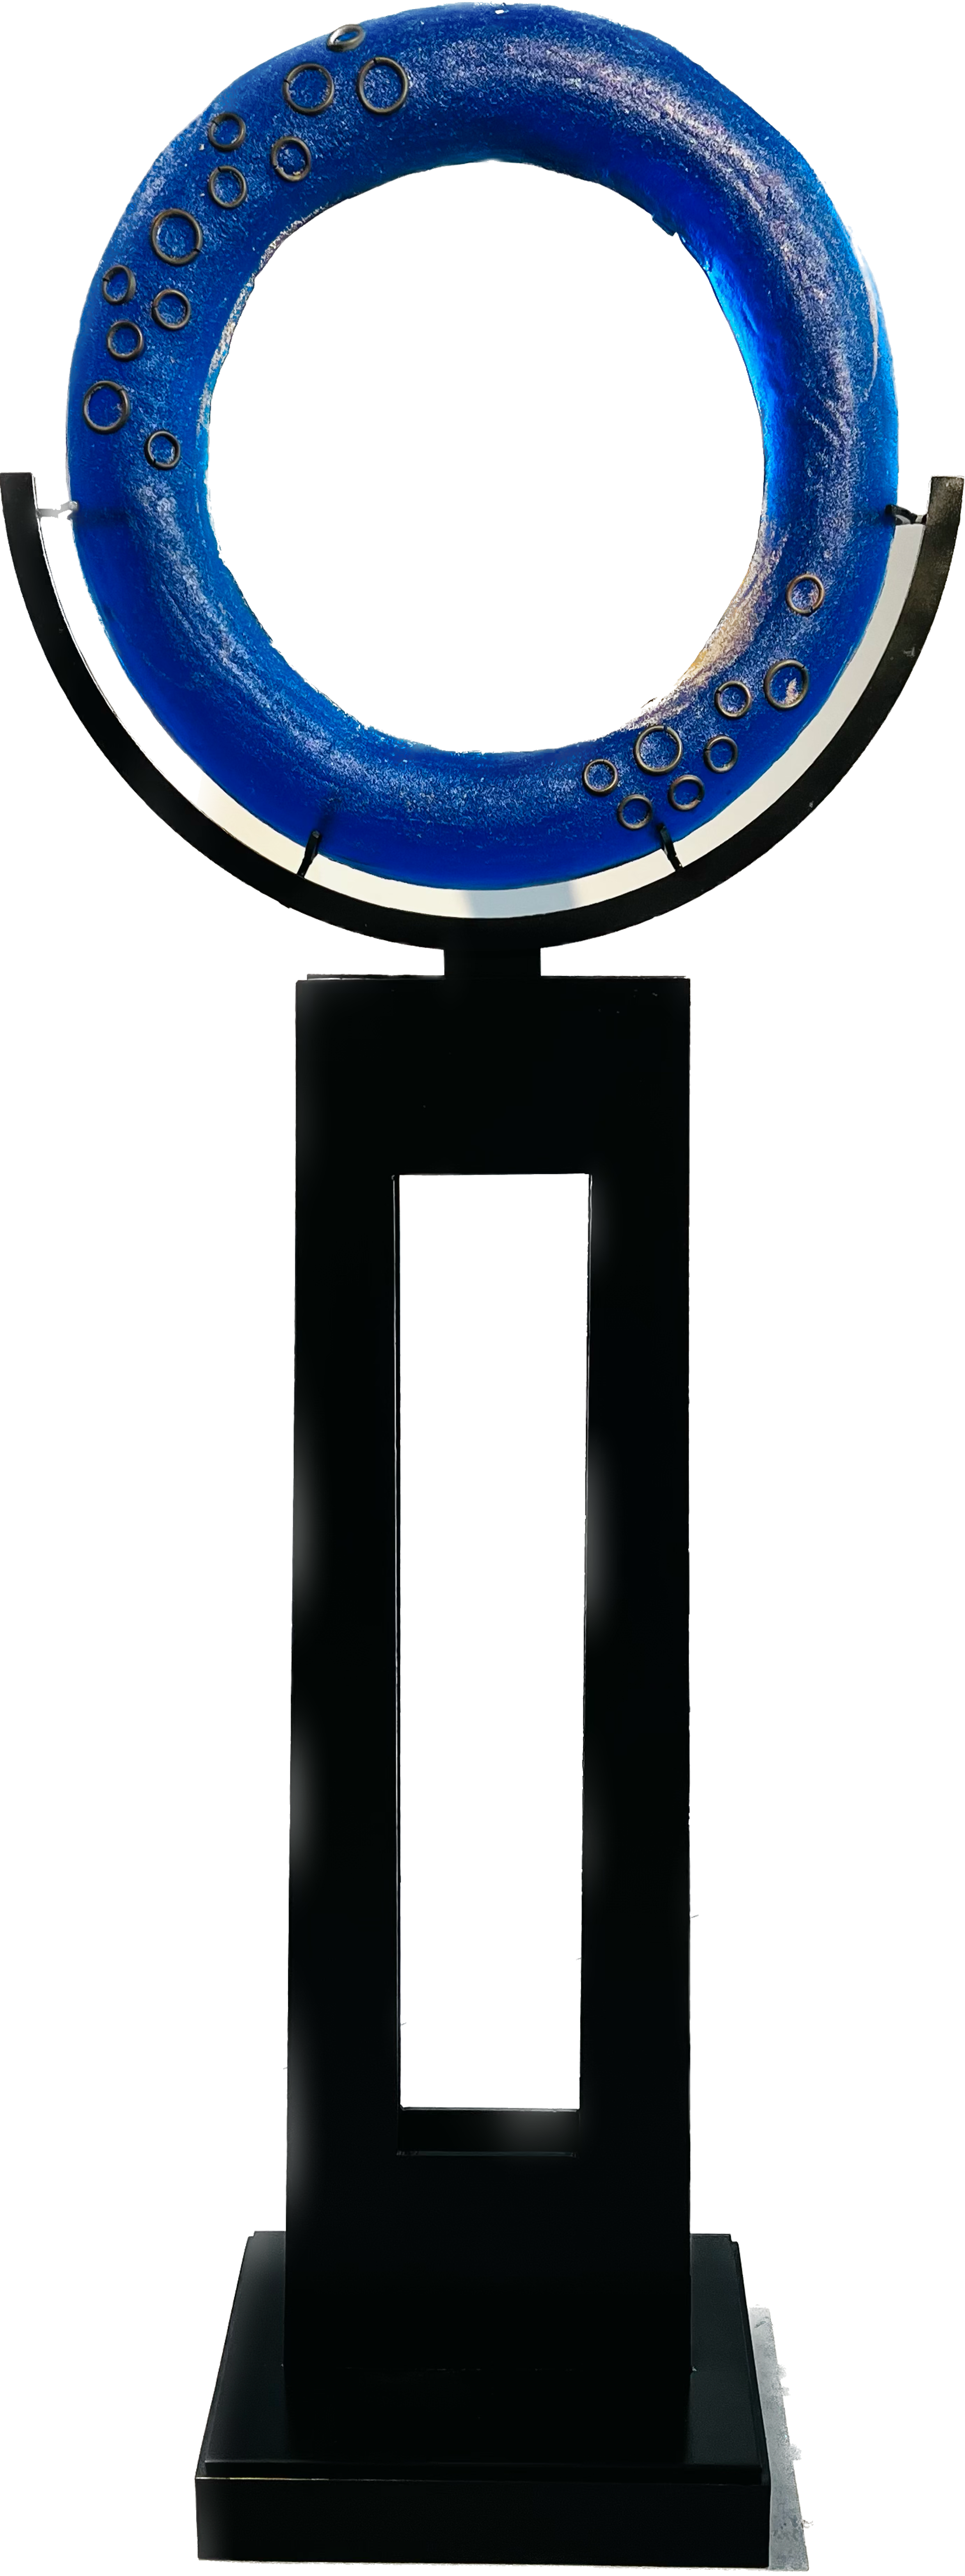 Vibrant Blue Freestanding Ring by Marlene Rose (b. 1967)